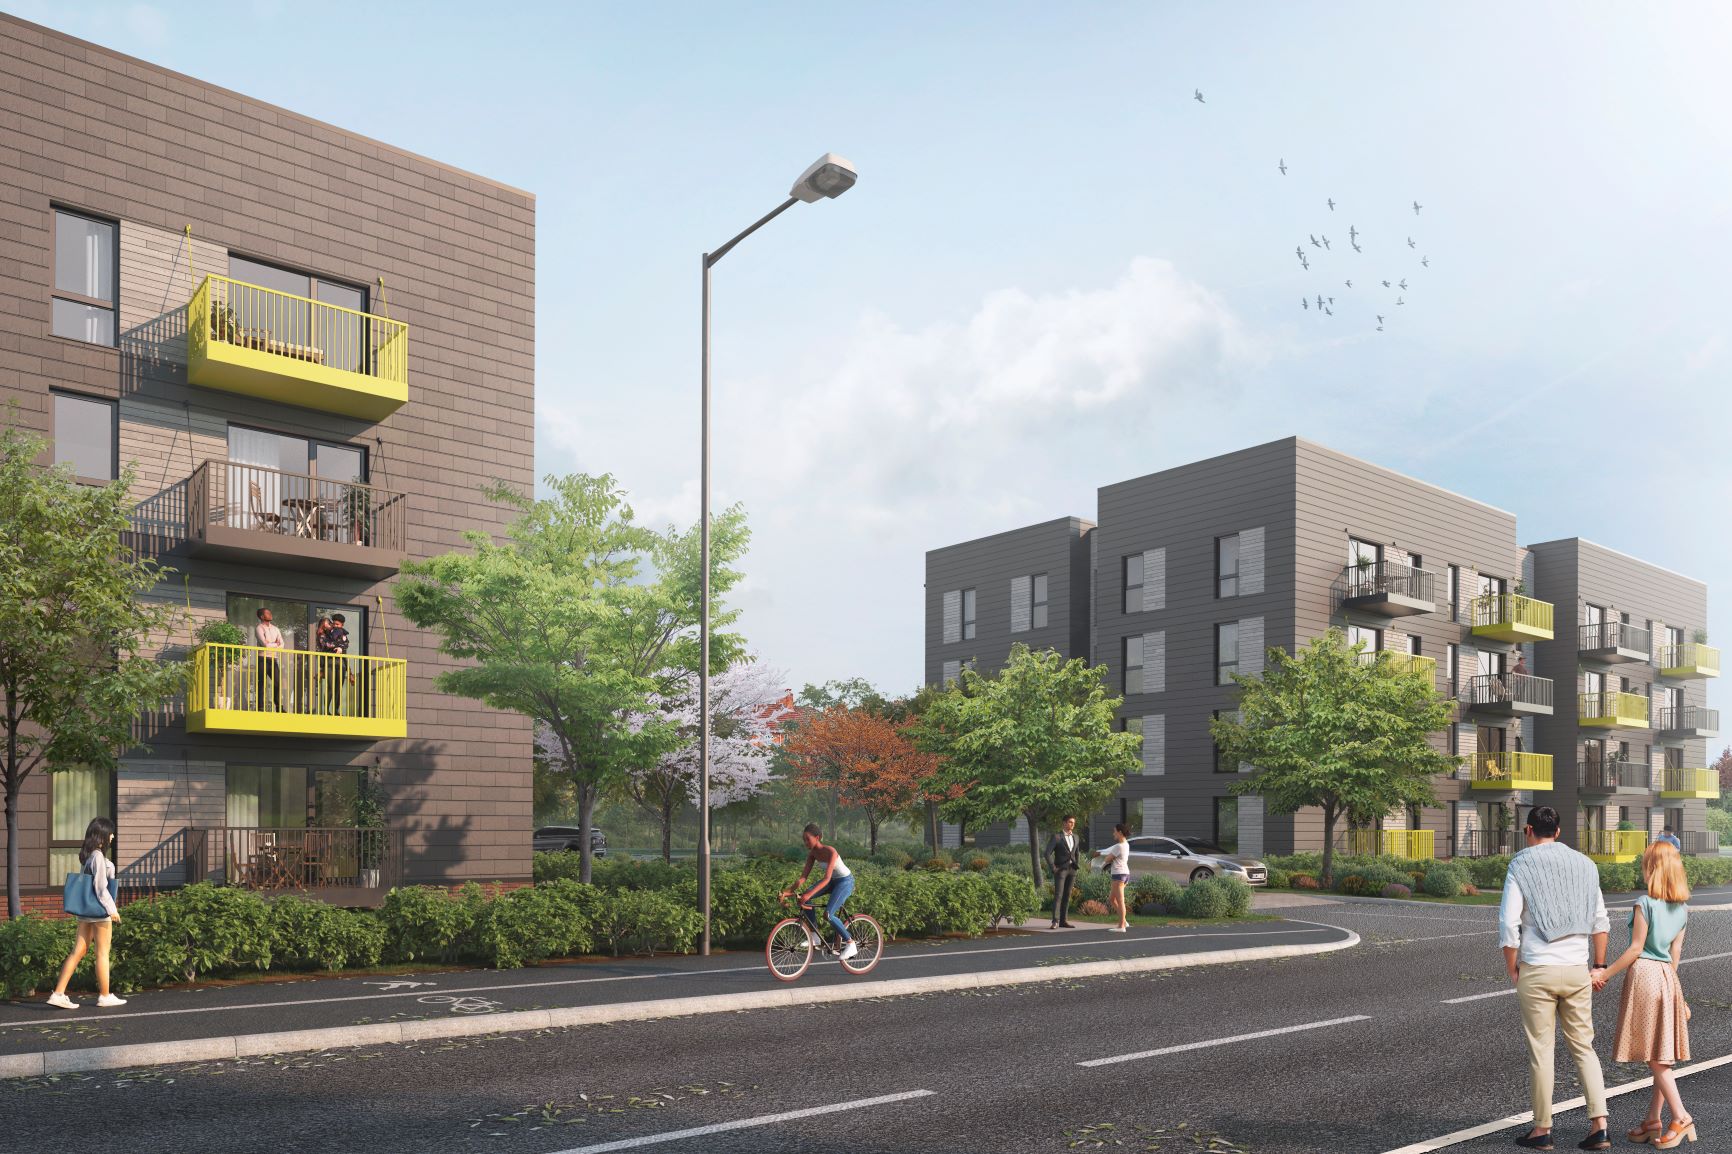 BoKlok, the Swedish offsite housing provider, outlines plans for 200 homes in Bristol @BoKlokUK @Bristol_HF @BristolCouncil